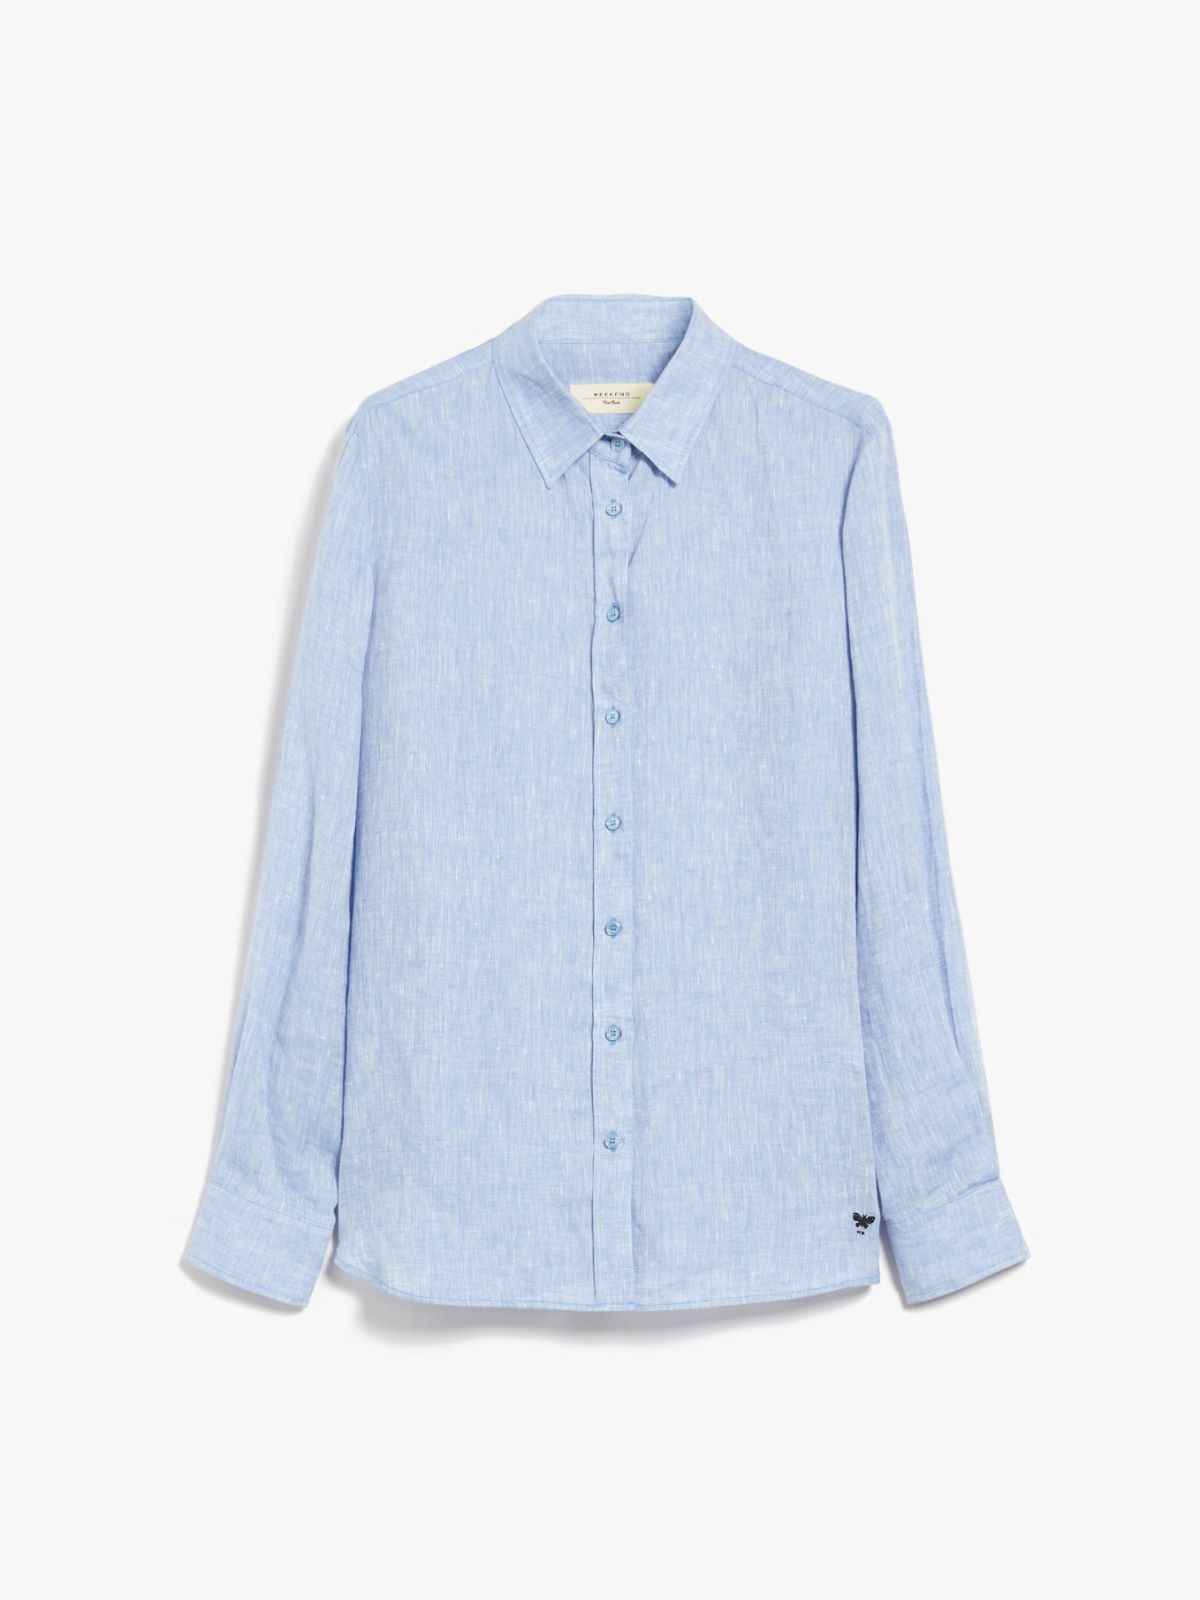 Linen fabric shirt - LIGHT BLUE - Weekend Max Mara - 6